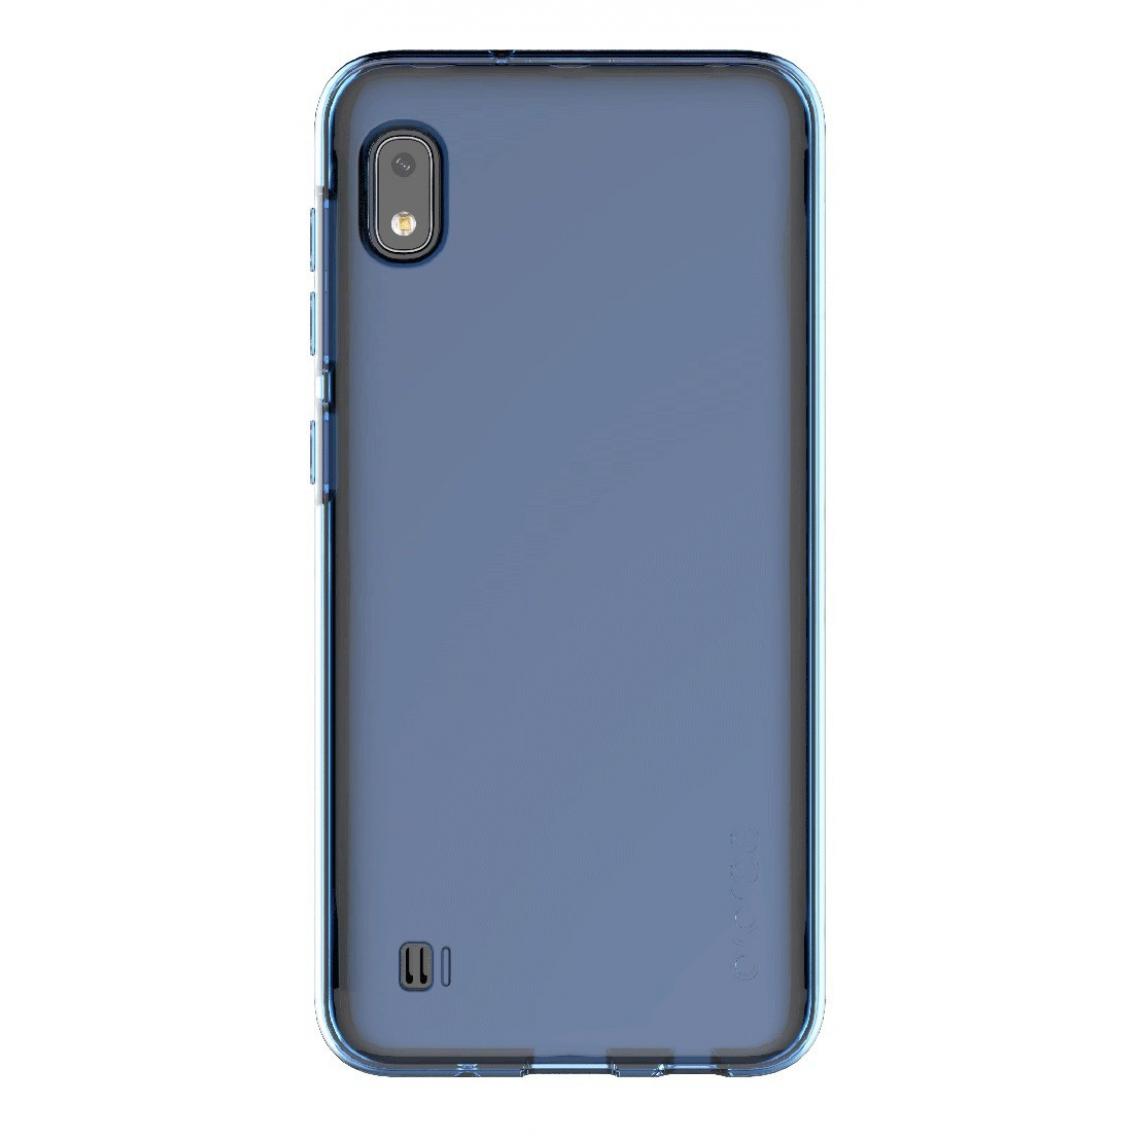 Samsung - Coque smartphone Coque semi-rigide transparente bleue Galaxy A10 - Coque, étui smartphone